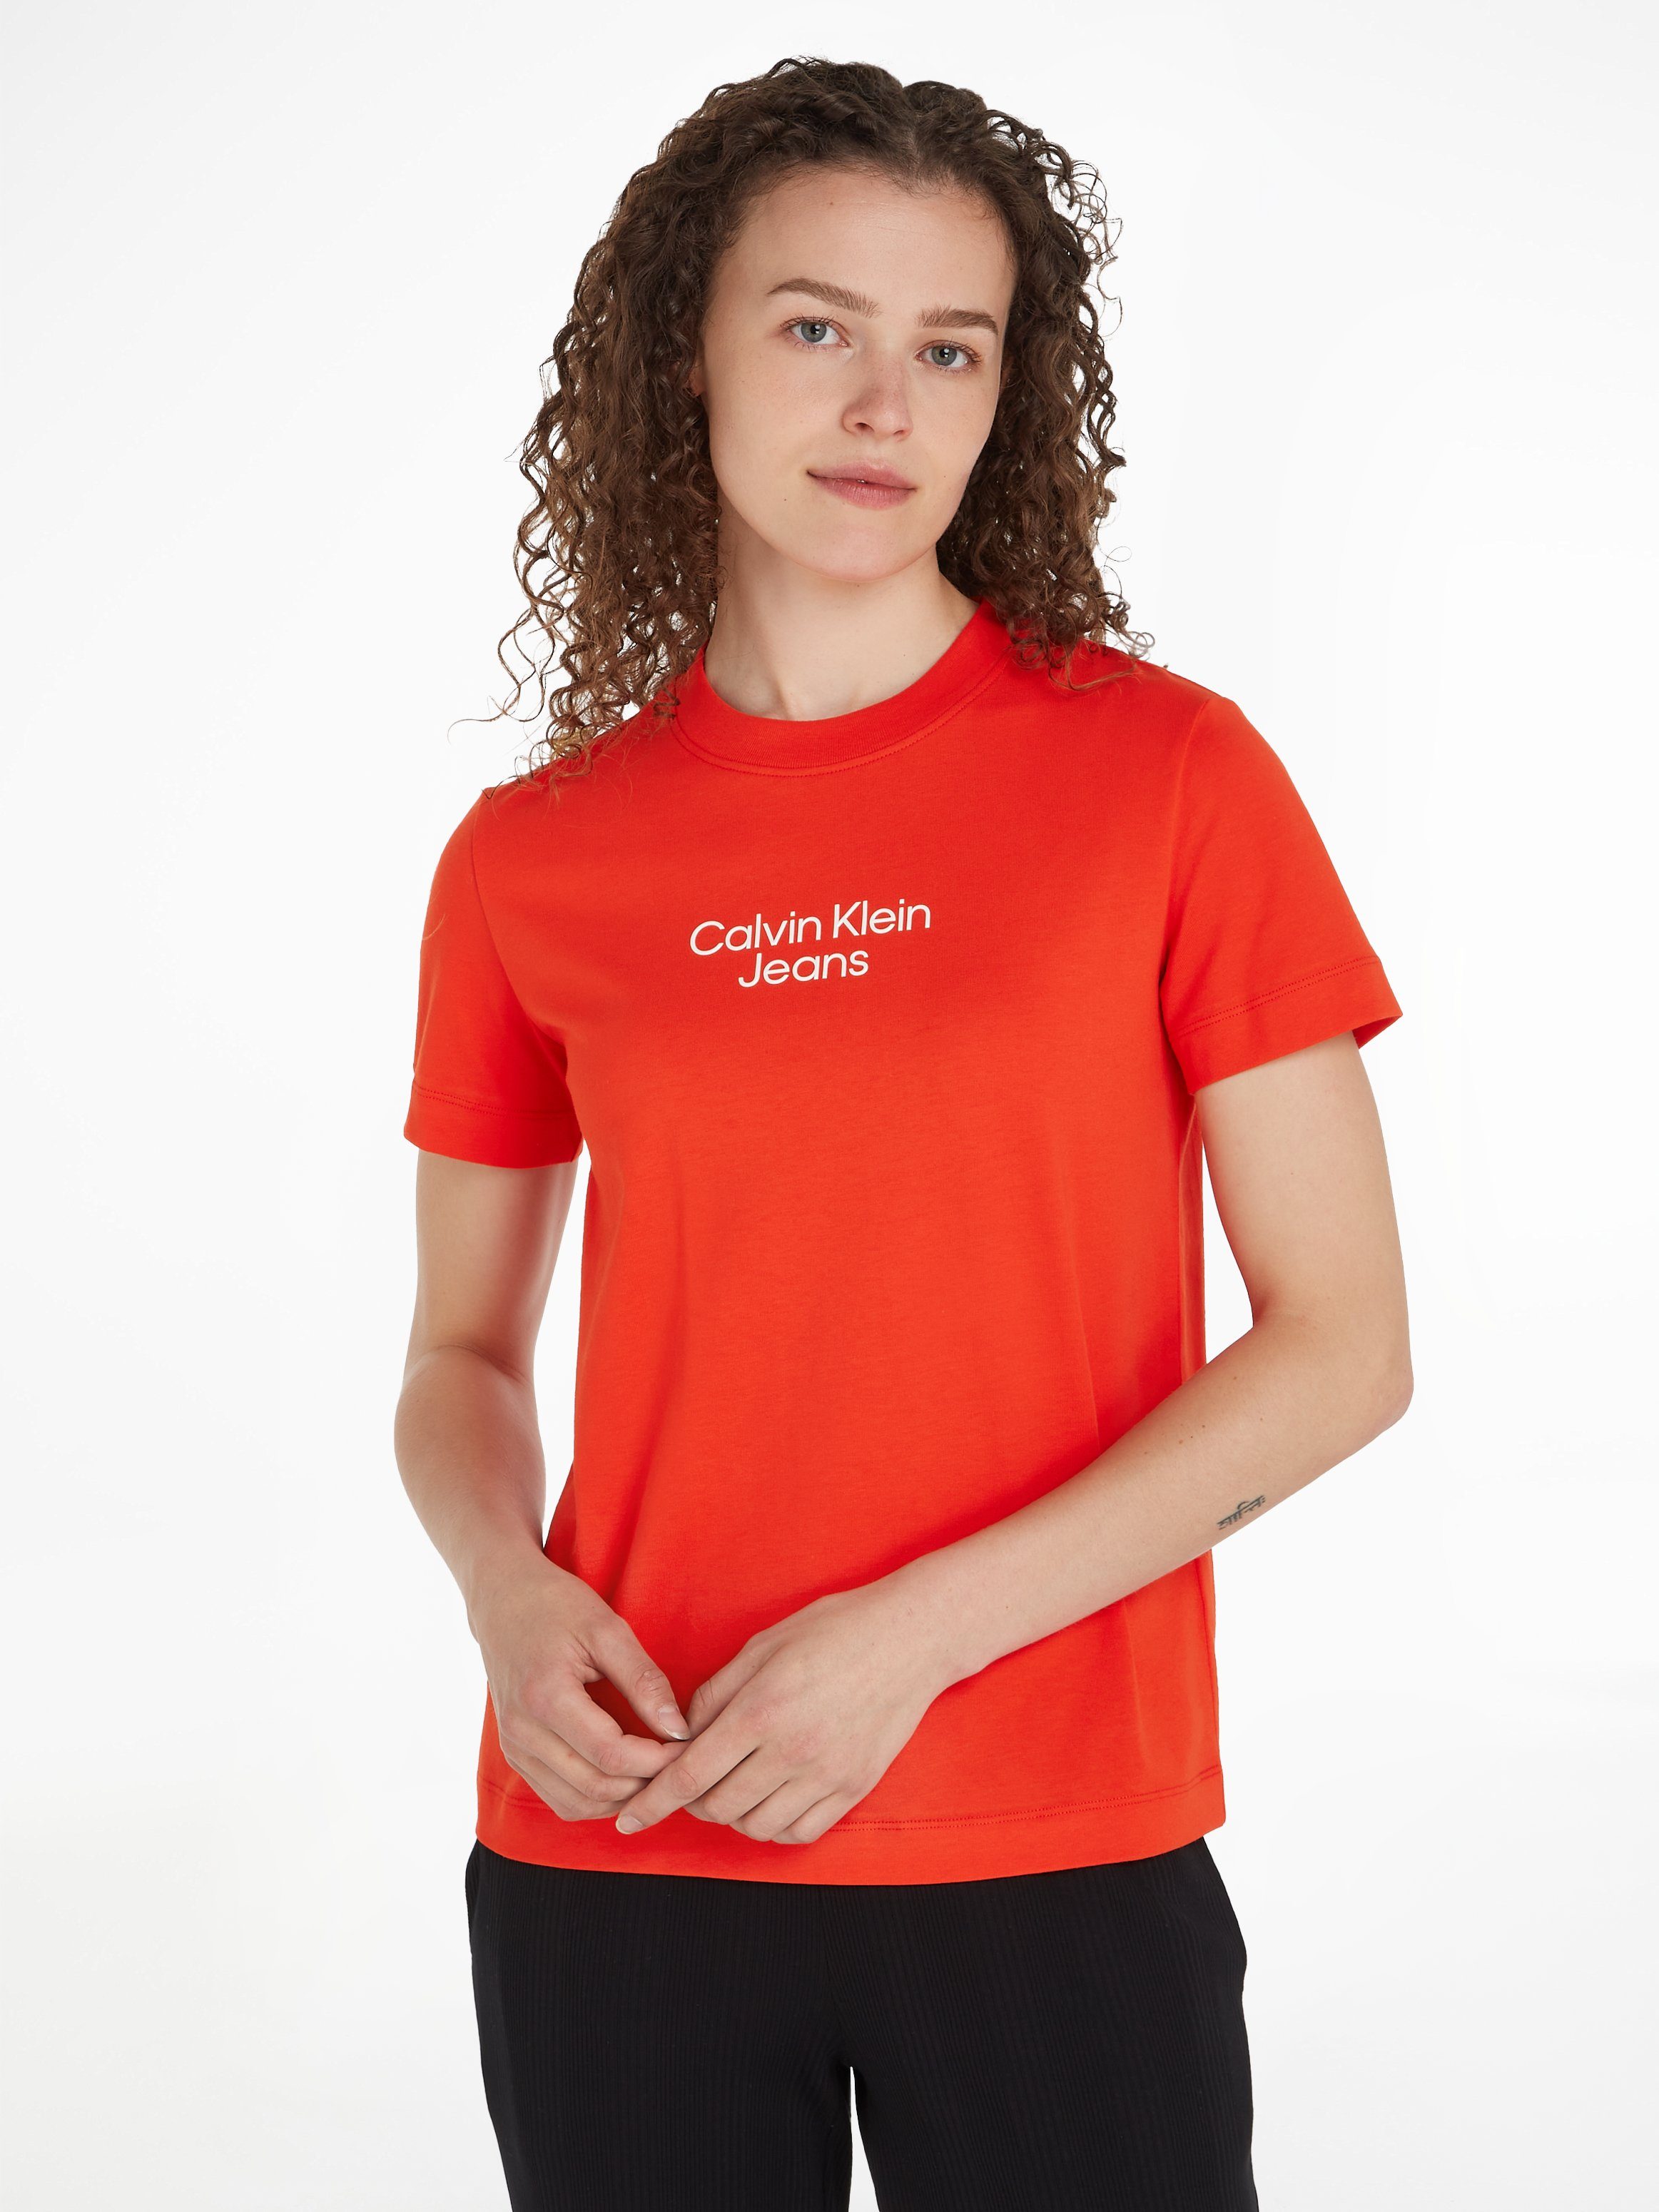 Günstige online | Damen Klein Calvin OTTO kaufen T-Shirts